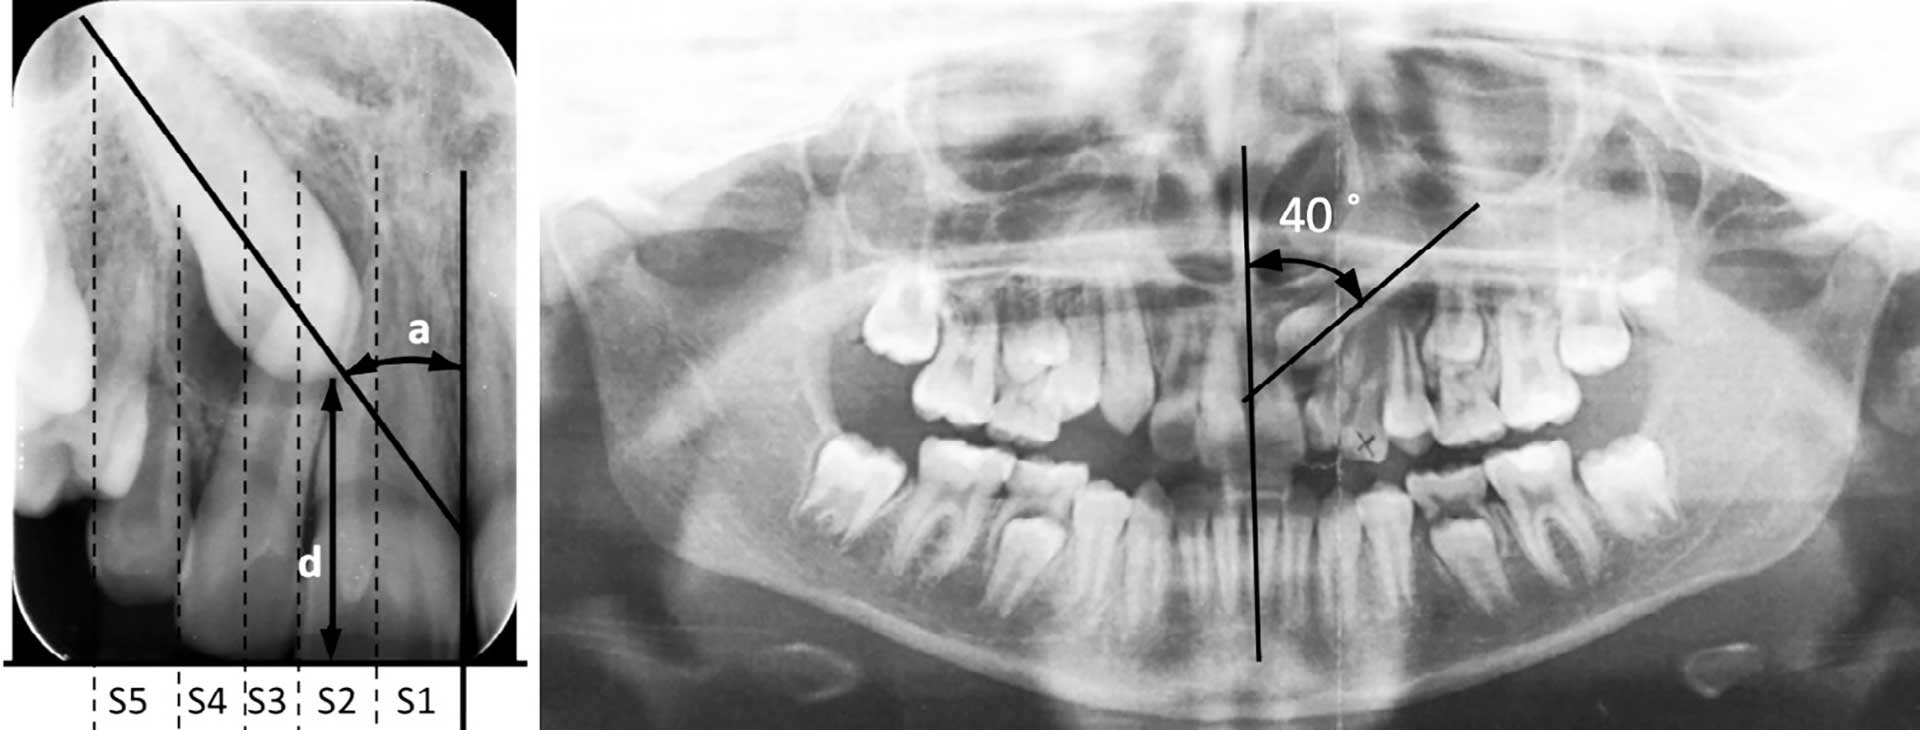 illustrasjon: Oppfølging etter kirurgisk frilegging av retinerte maxillære hjørnetenner i Den offentlige tannhelsetjenesten i Akershus